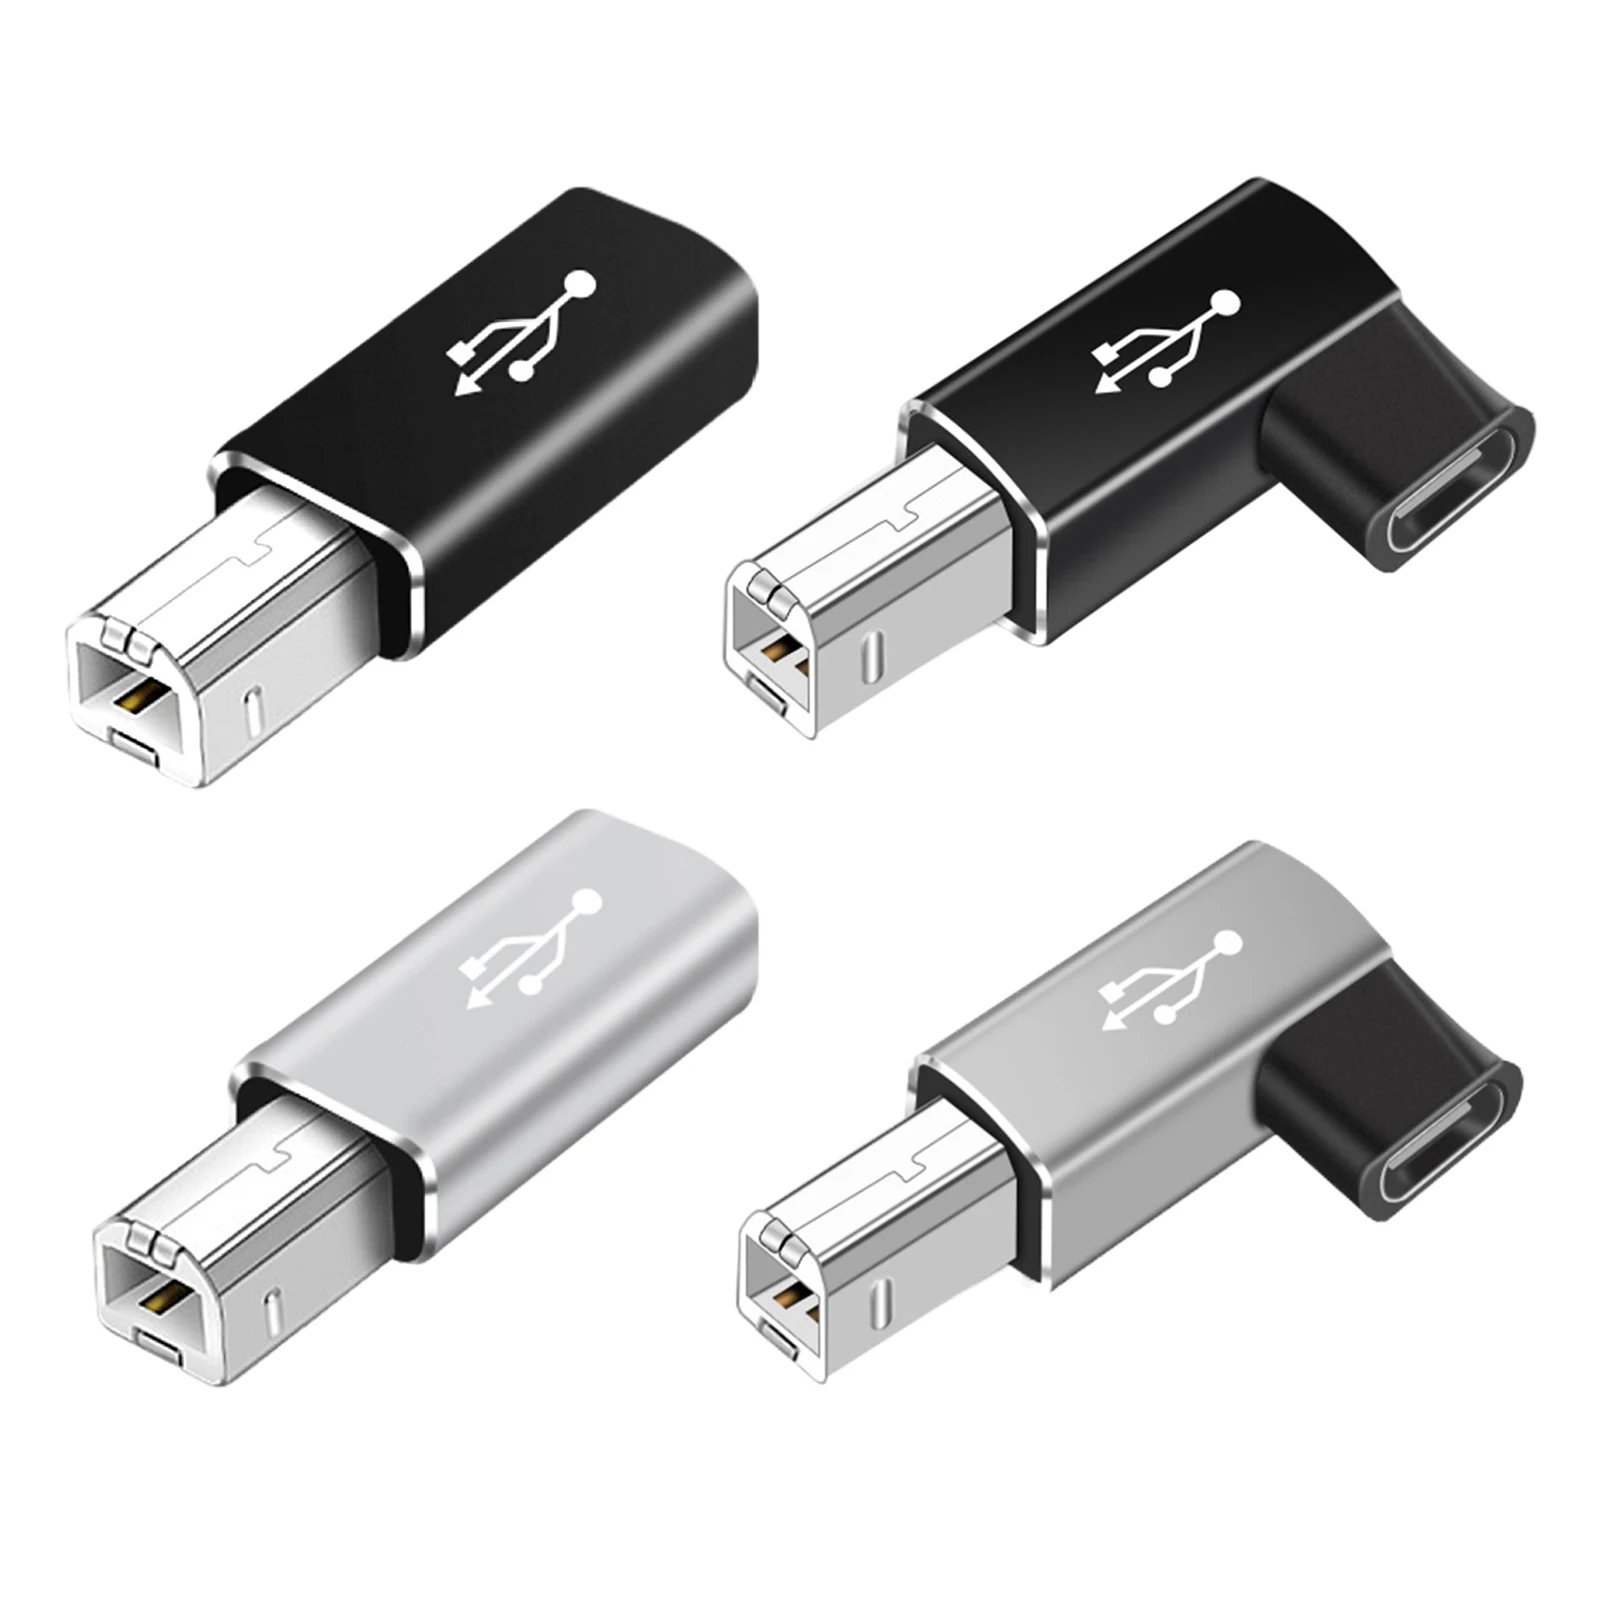 USB 유형 C 암 USB B 수 어댑터 USB 유형 C 암 USB B 수 어댑터 고속 스캐너 프린터 변환기 용 안정 ...